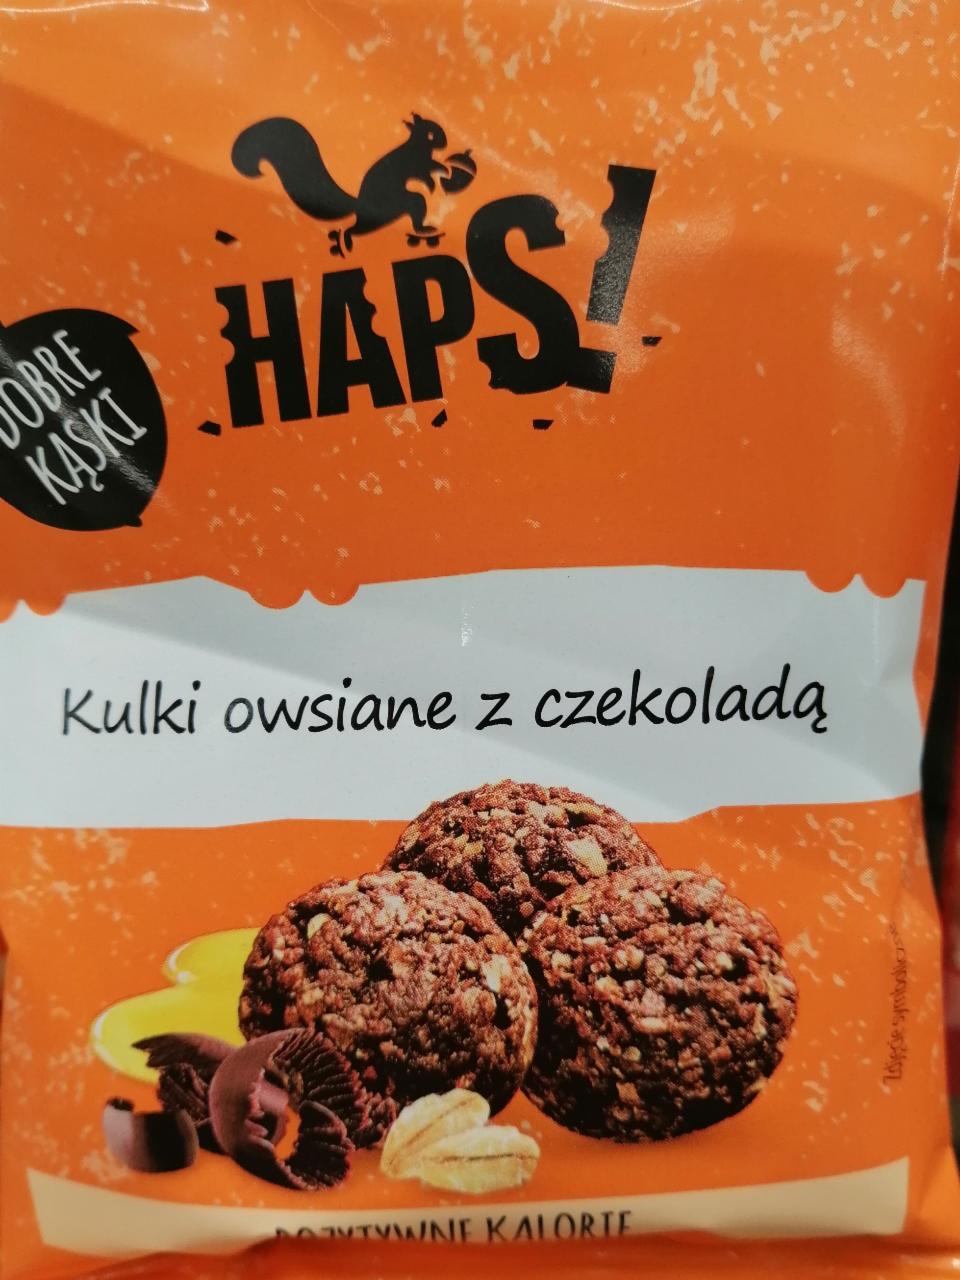 Фото - Kulki owsiane z czekolada Haps!